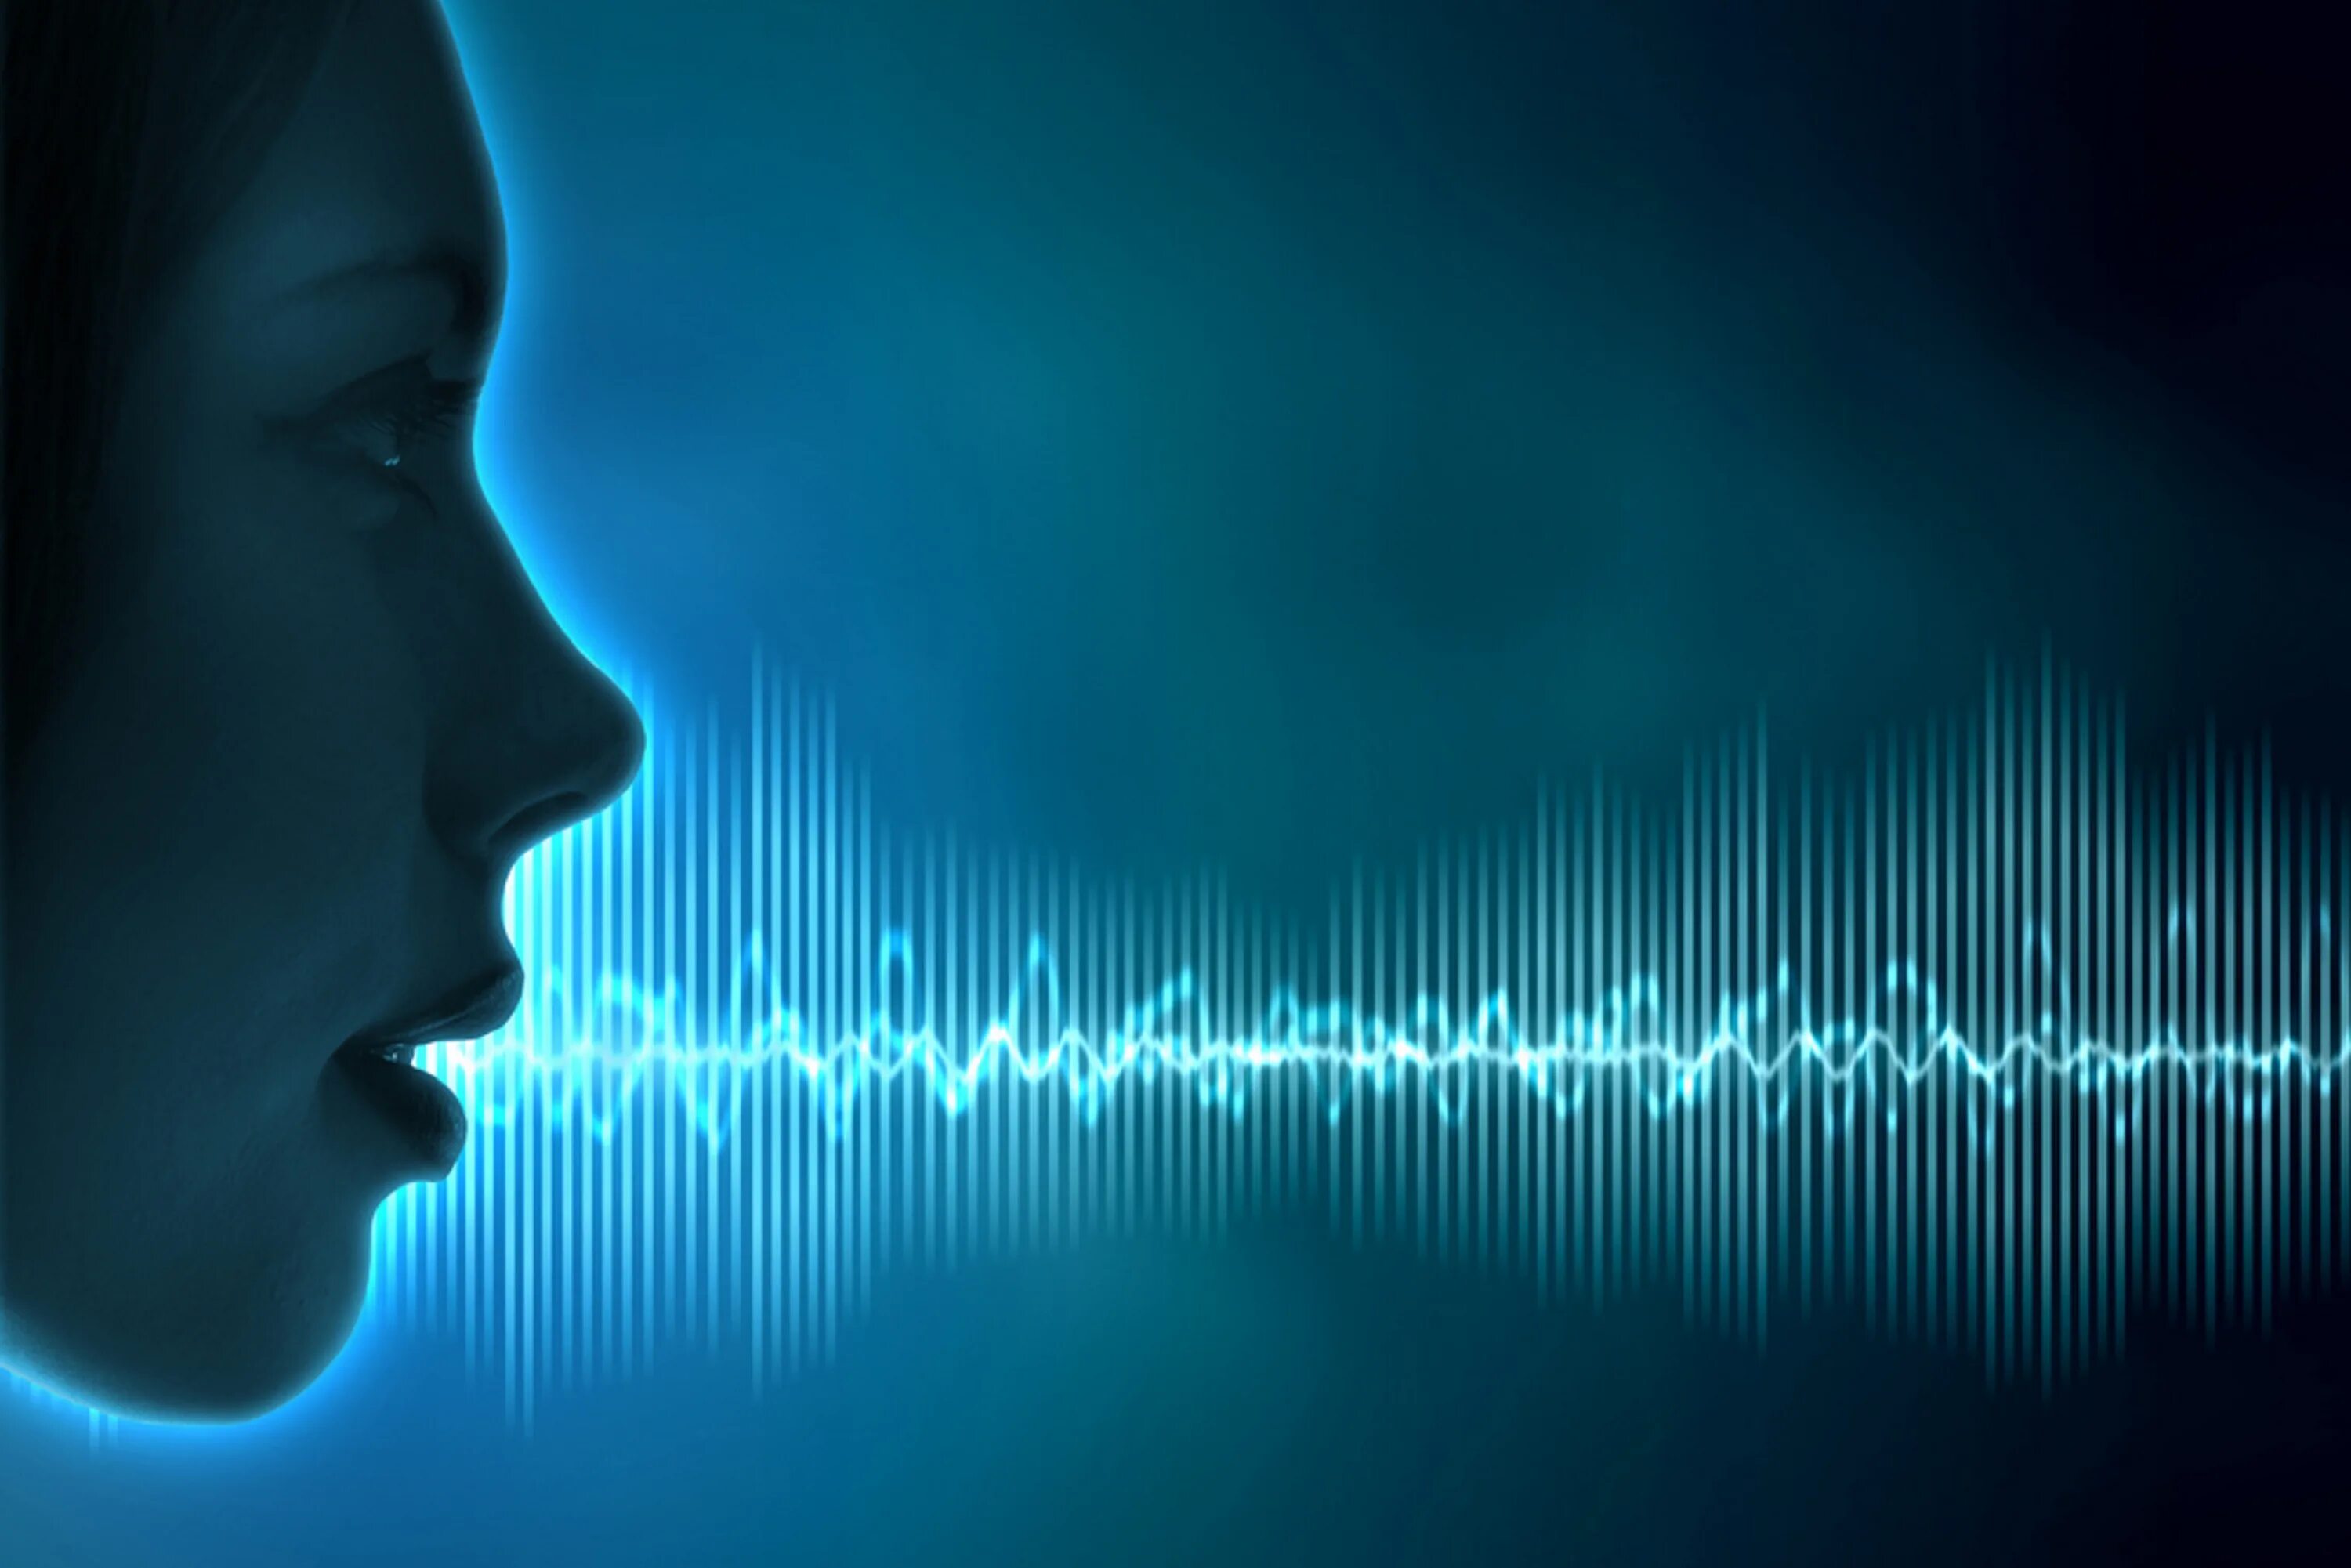 Повышение тона голоса. Голос человека. Звуковая волна. Распознавание речи. Голосовая биометрия.